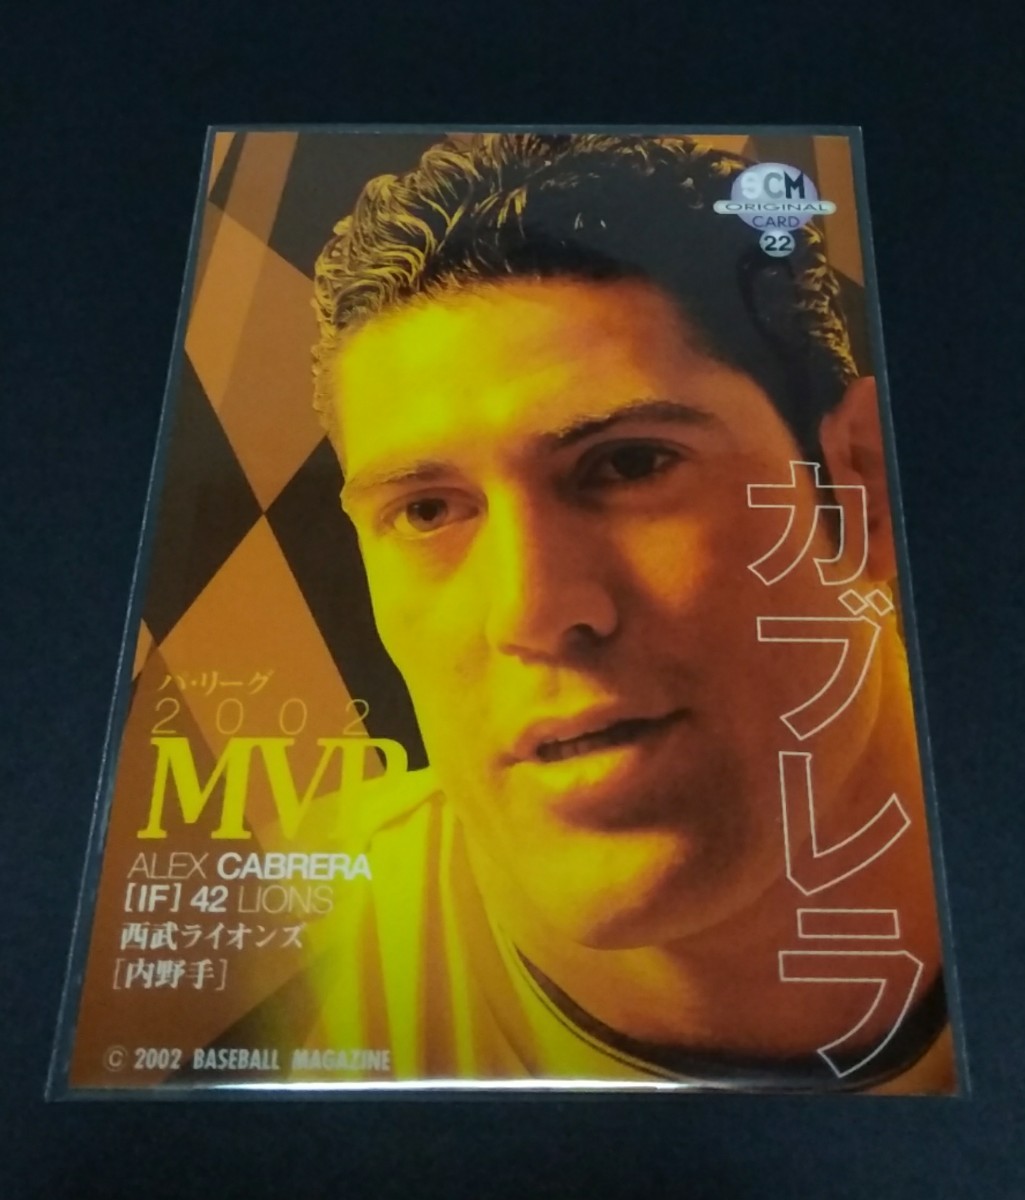 2002年BBM カブレラ(西武)2002MVP SCM付録オリジナルカード。No.22。_画像2